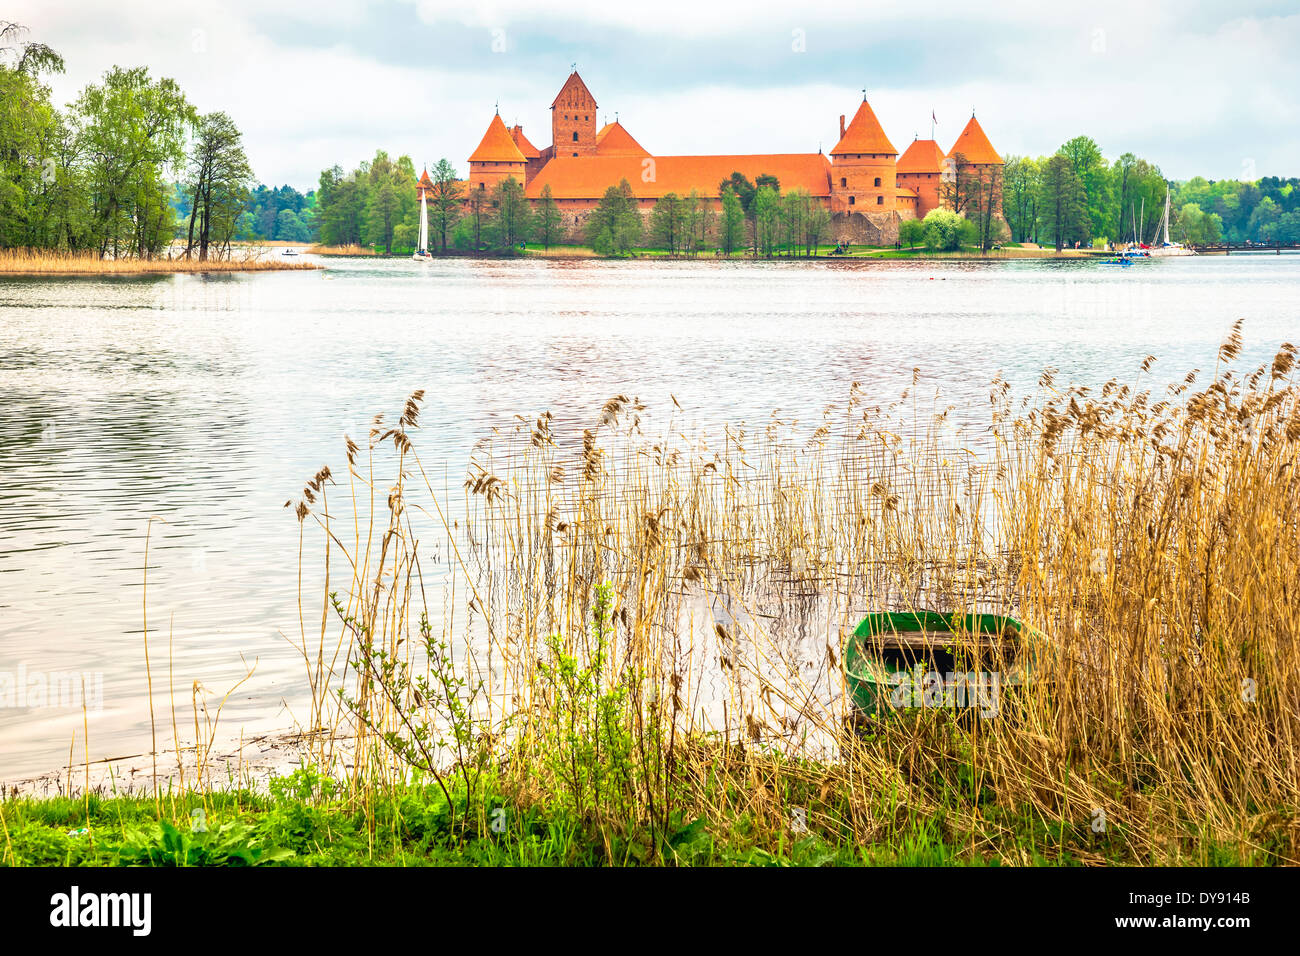 Ancien château médiéval à Trakai, Lituanie Banque D'Images